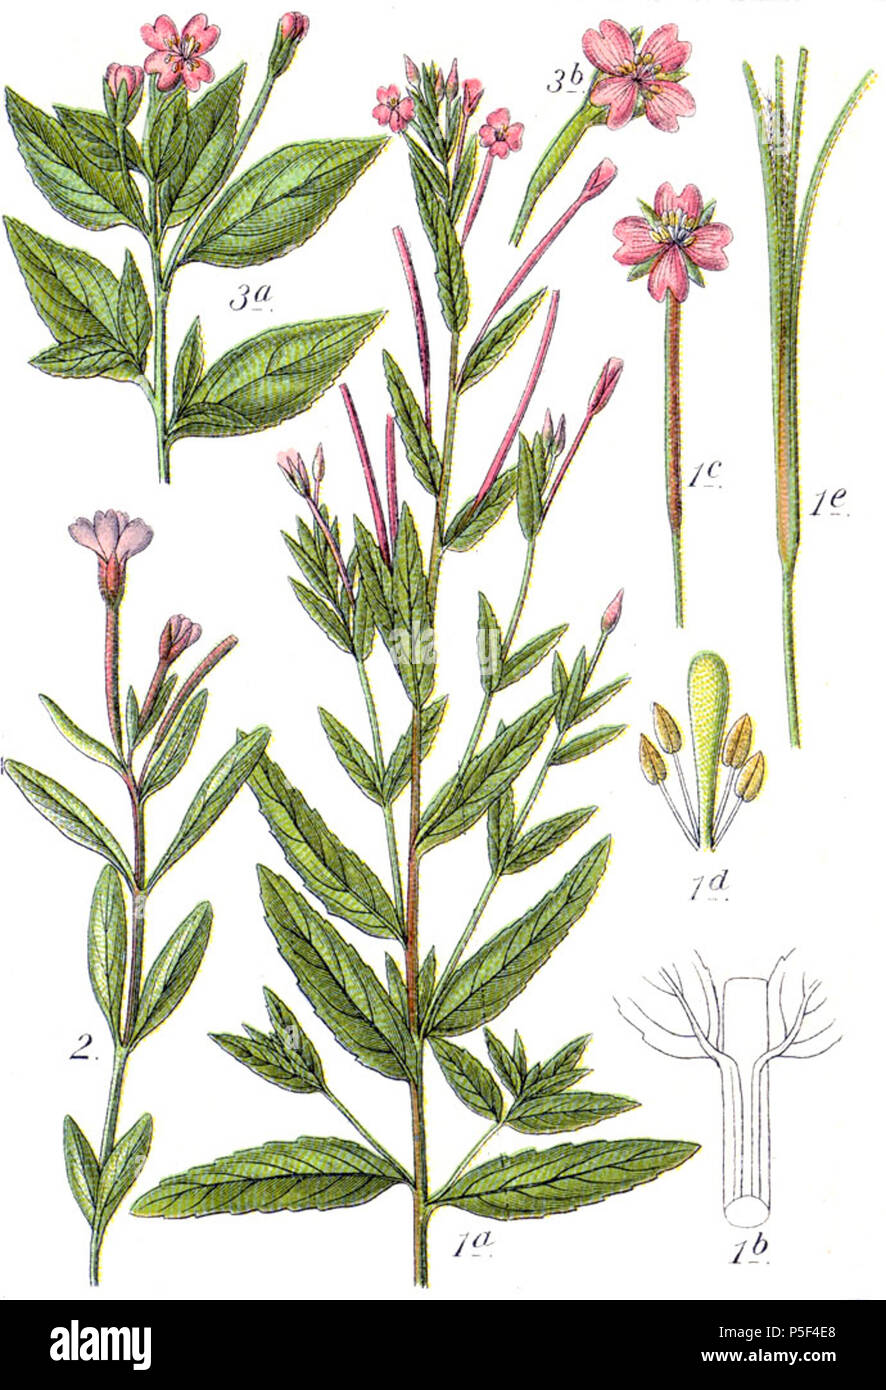 N/A. 1. Epilobium tetragonum subsp. tetragonum L., syn. Epilobium adnatum Griseb. s. str. 2. Epilobium anagallidifolium Lam. 3. Epilobium alsinifolium Vill. Original Caption 1. Vierkantiges Weidenröschen, Epilobium adnatum 2. Gauchheil-Röschen, E. anagallidifolium 3. Mieren-Röschen, E. alsinifolium . 1796. Johann Georg Sturm (Painter: Jacob Sturm) 520 Epilobium spp Sturm40 Stock Photo